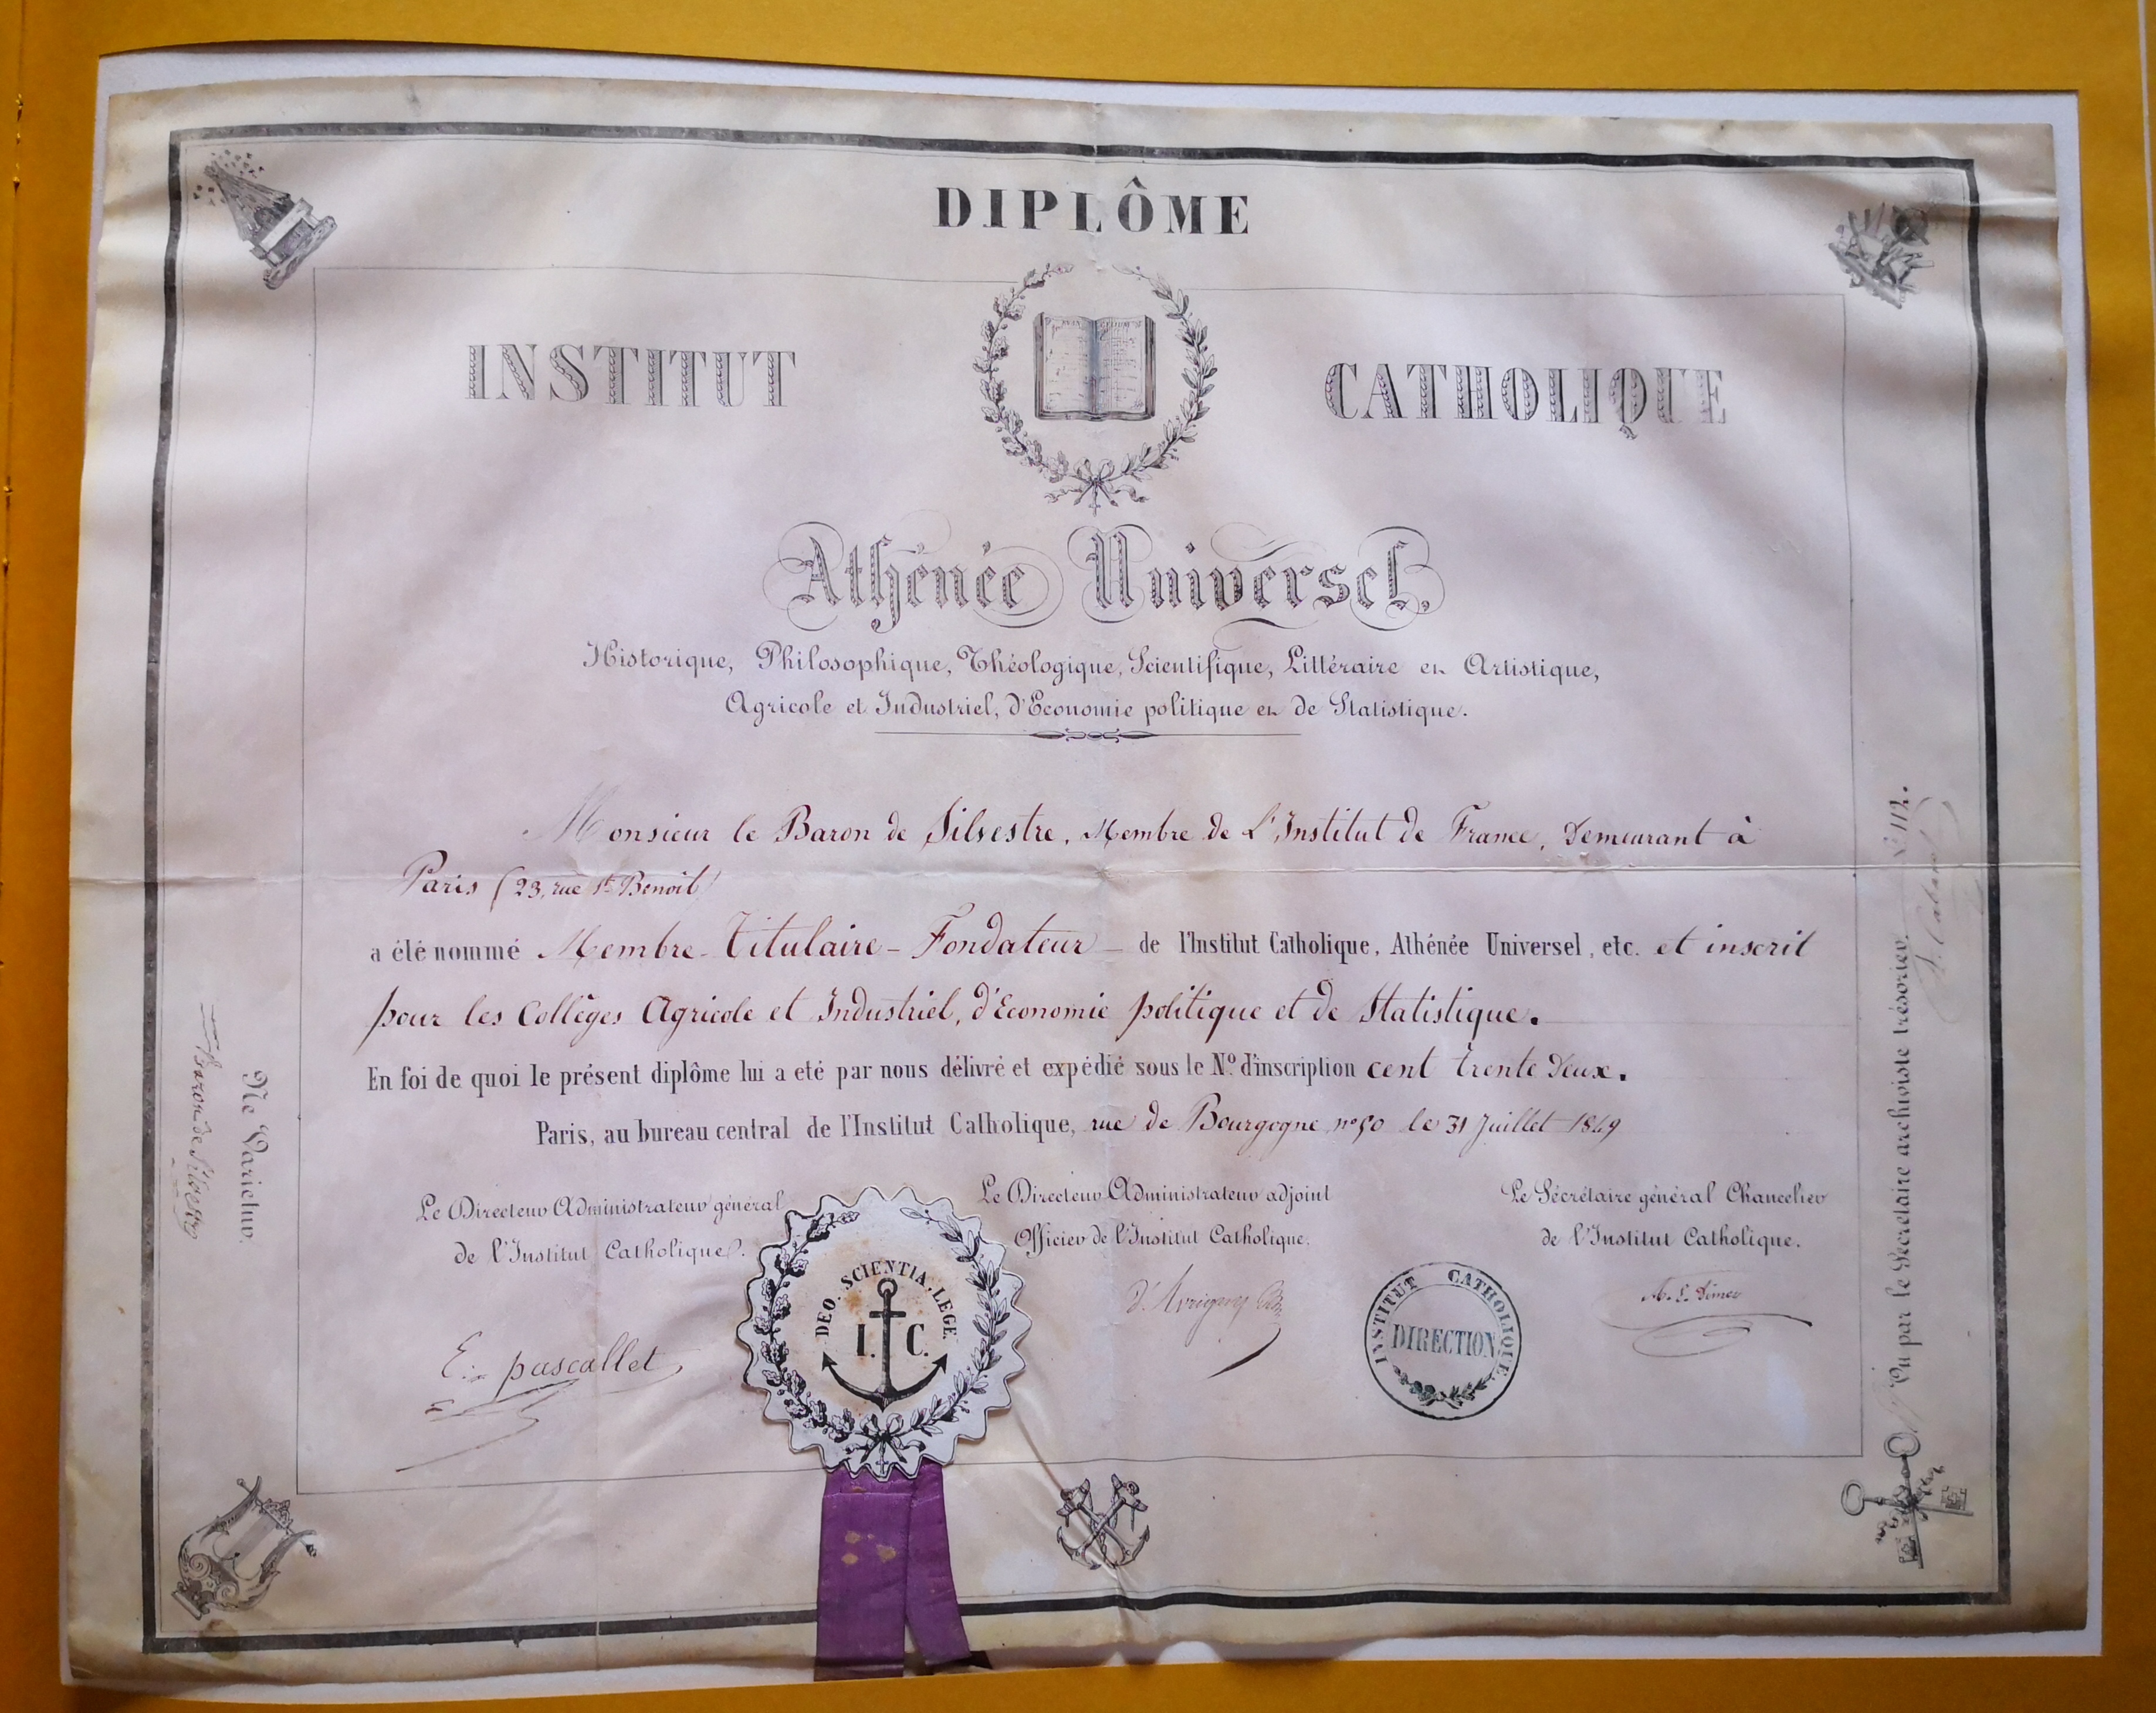  Diplôme de membre fondateur de l'Institut Catholique,  Athénée Universel  - Document 1